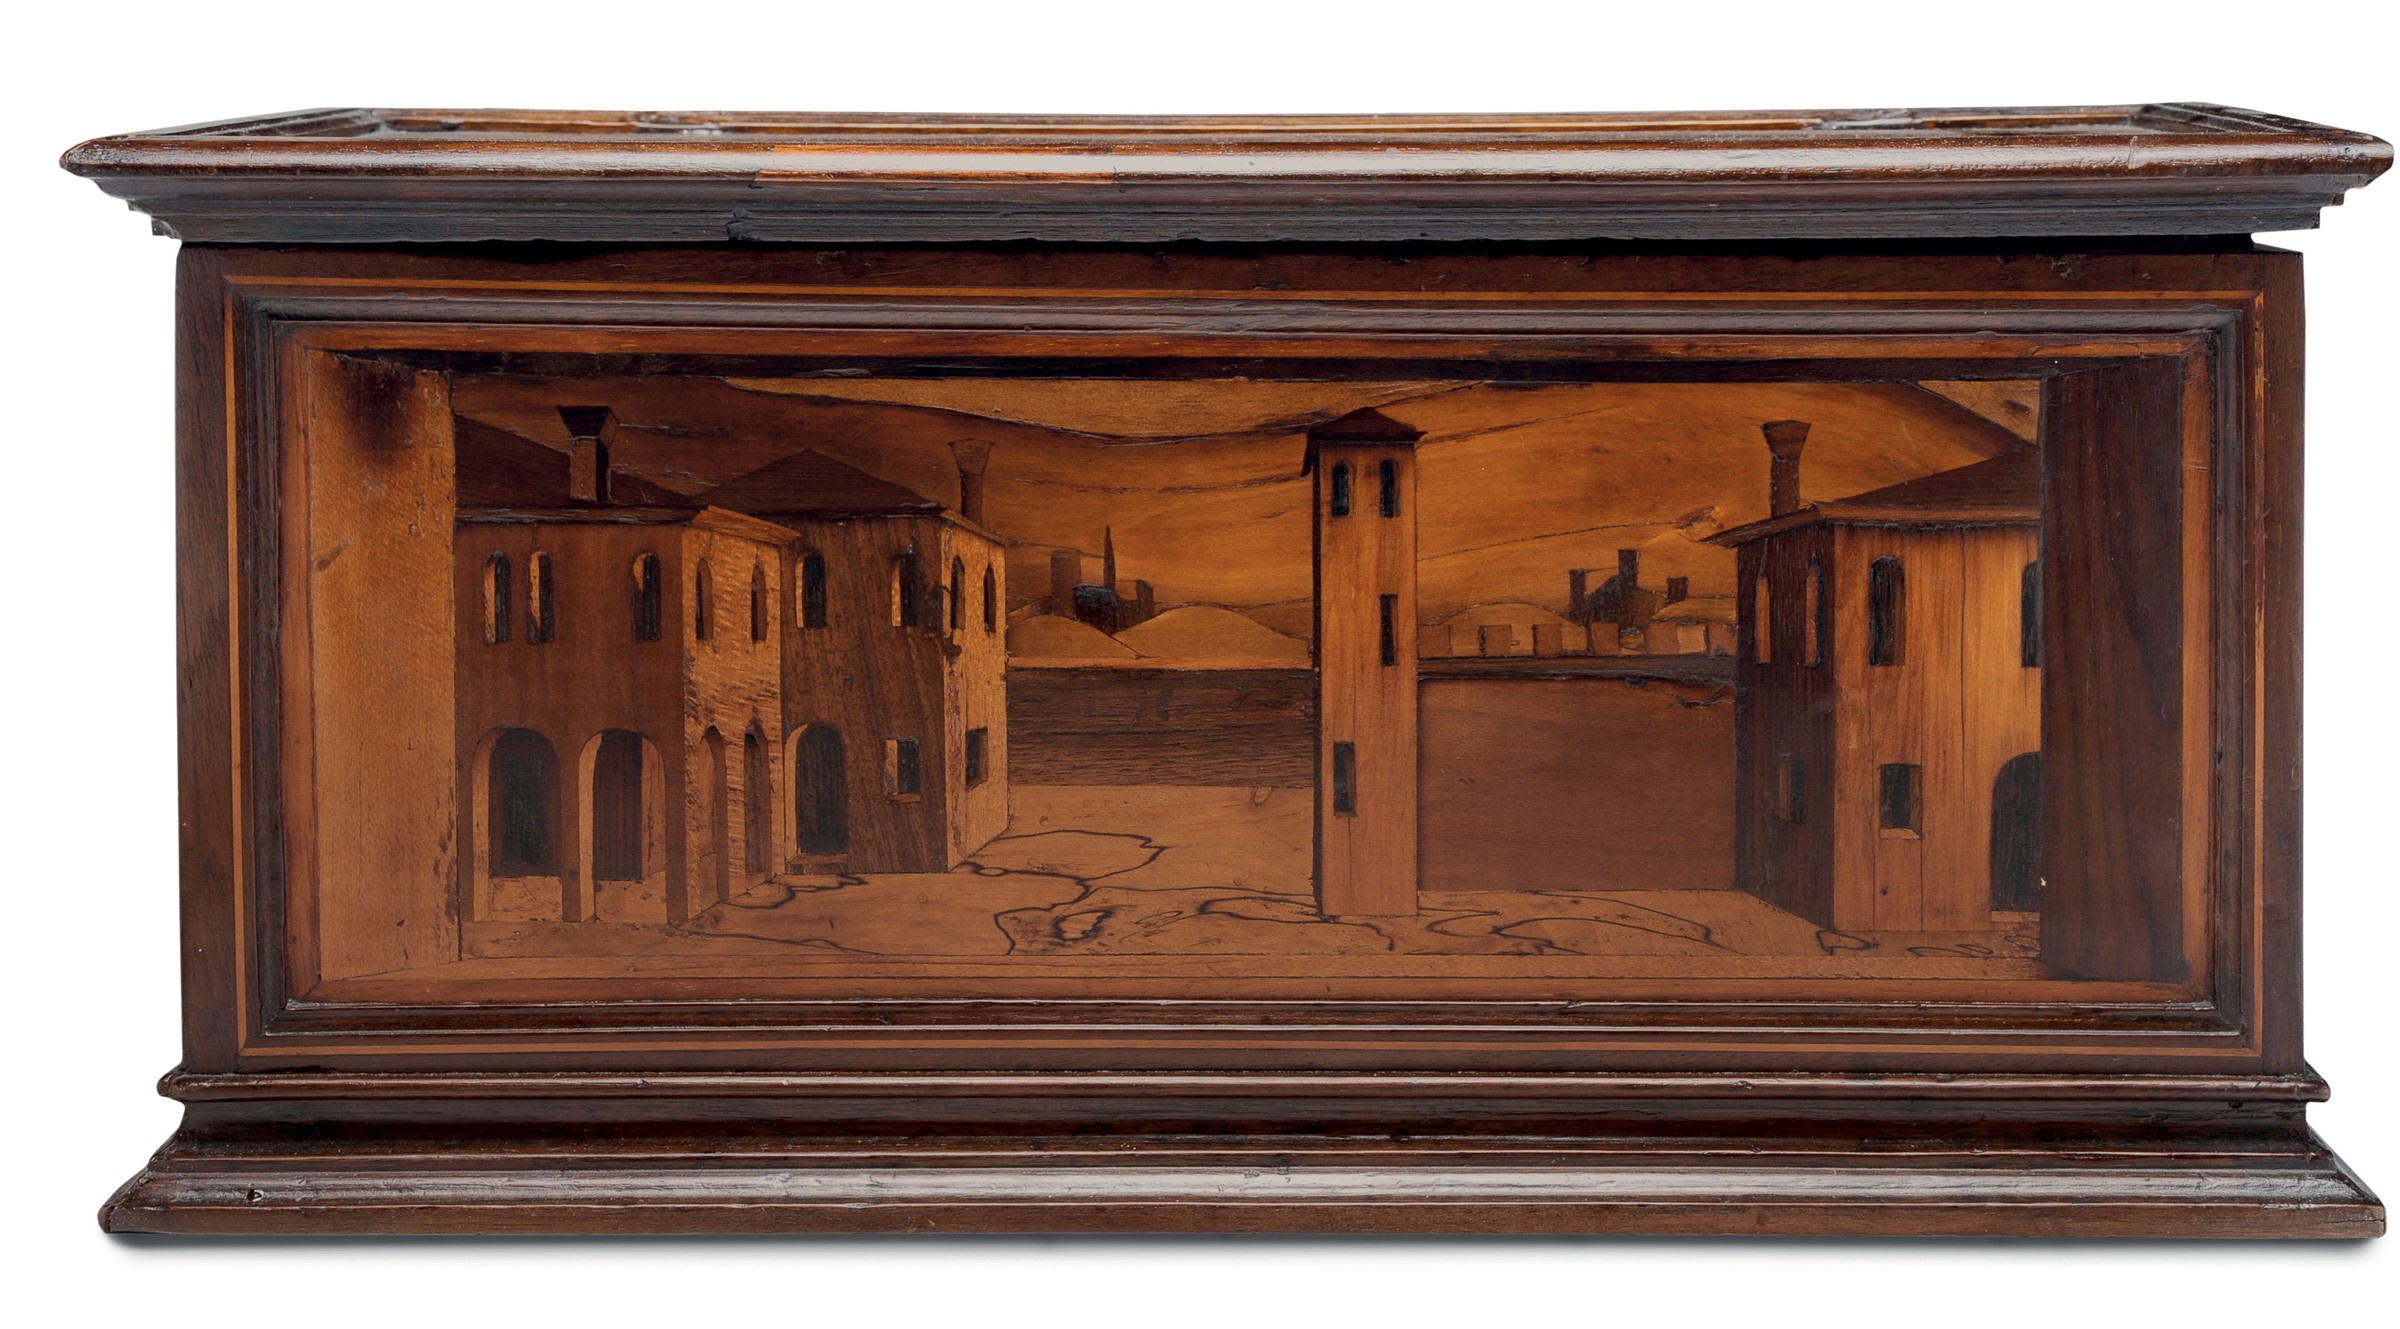 Cassina rettangolare in legno di noce intarsiata con varie essenze. Italia centrale, Emilia (?) - Image 3 of 3